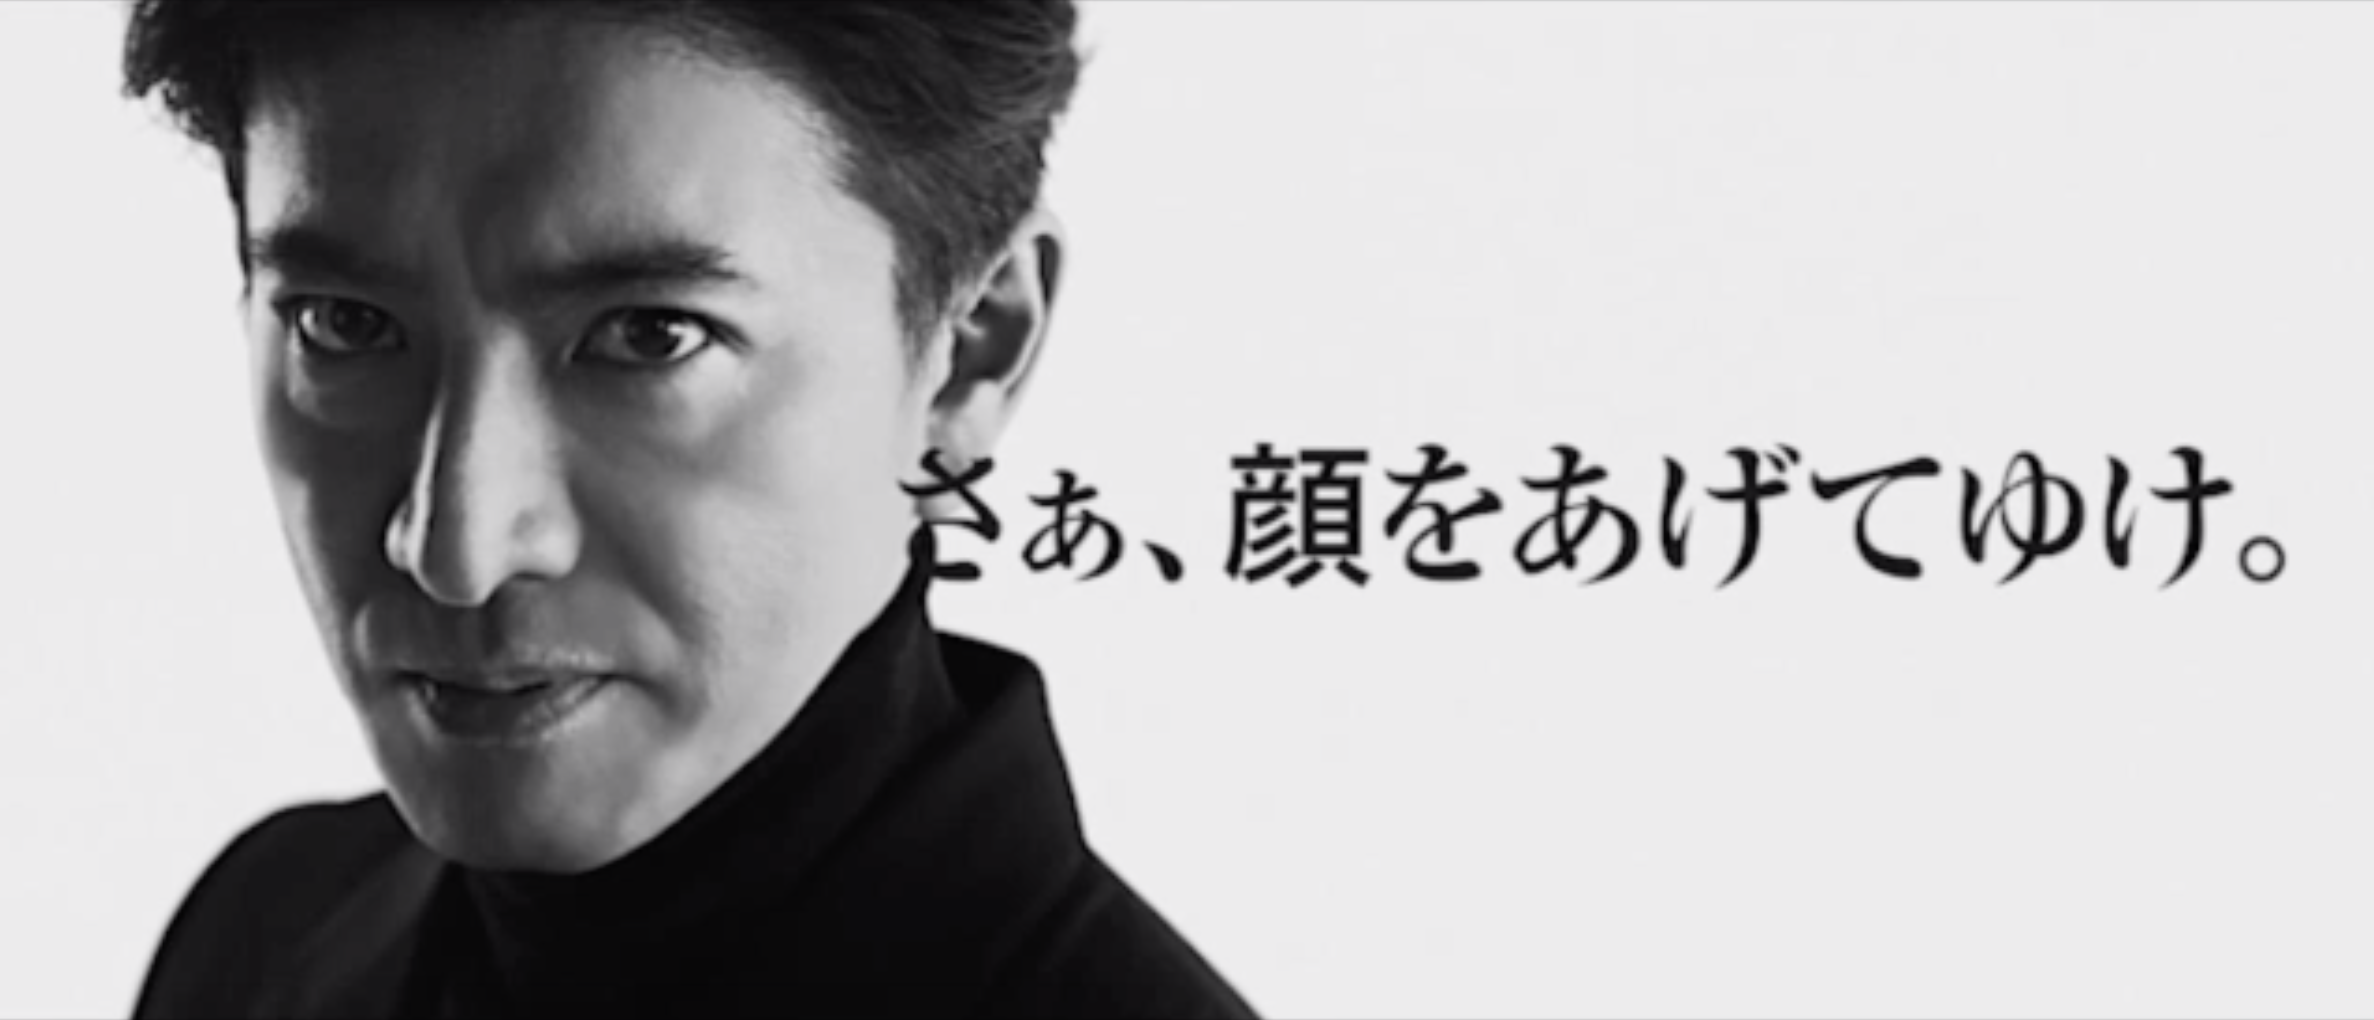 快讯 | 日本新锐男士护肤品牌 BULK HOMME 联手新奢美妆集合平台 Bonnie&Clyde 在中国线下首发